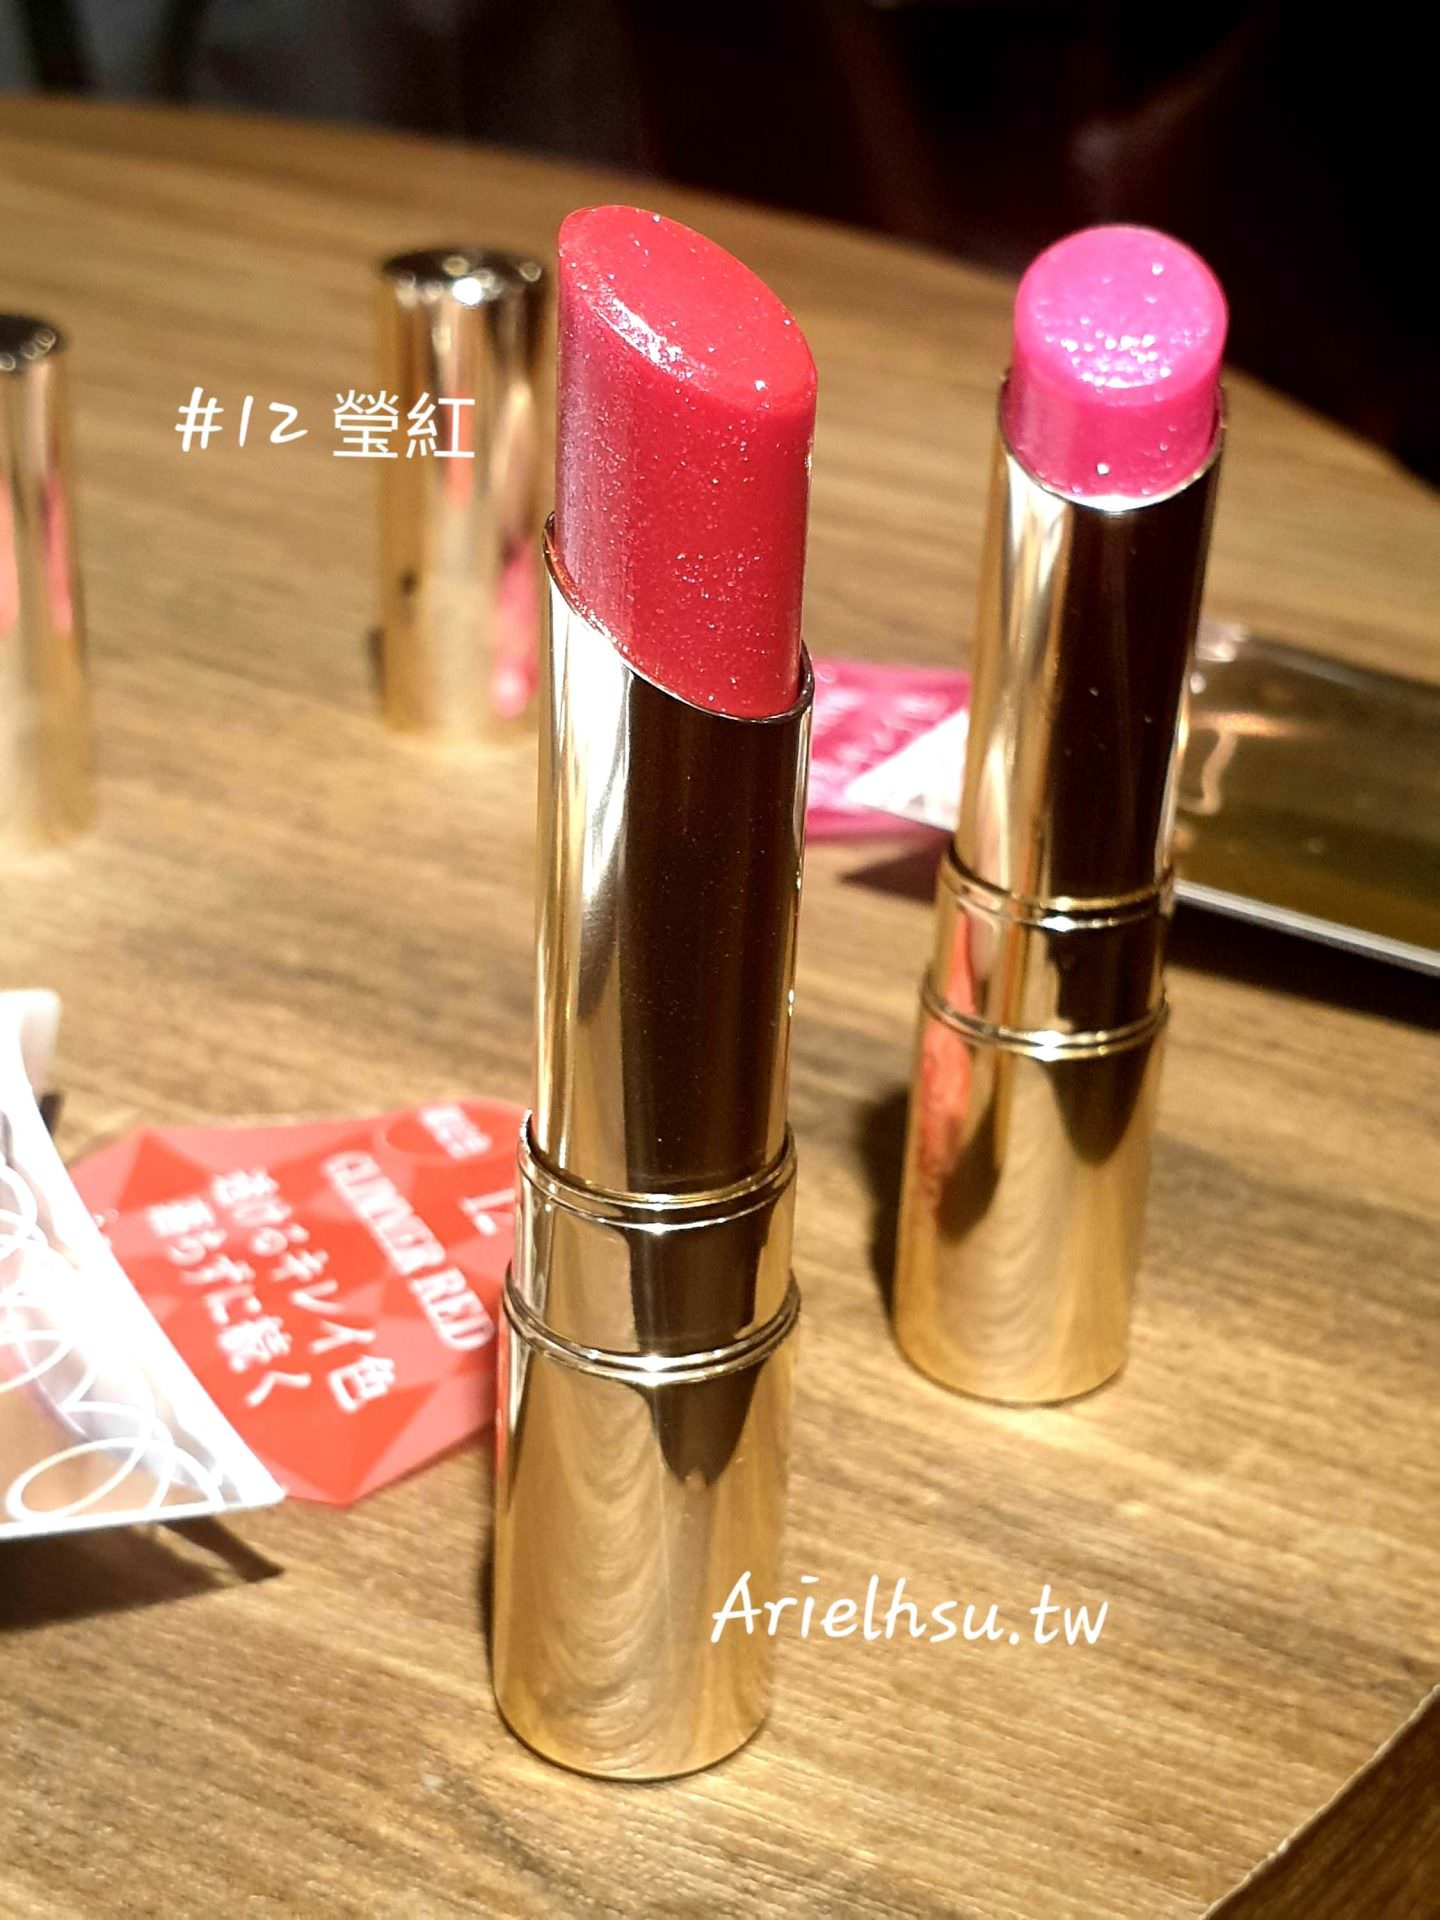 【美妝】日本 Opera Lip Tint 渲漾水色唇膏 限定色 #11燦粉 #12瑩紅 閃爍晶亮款 | 試色